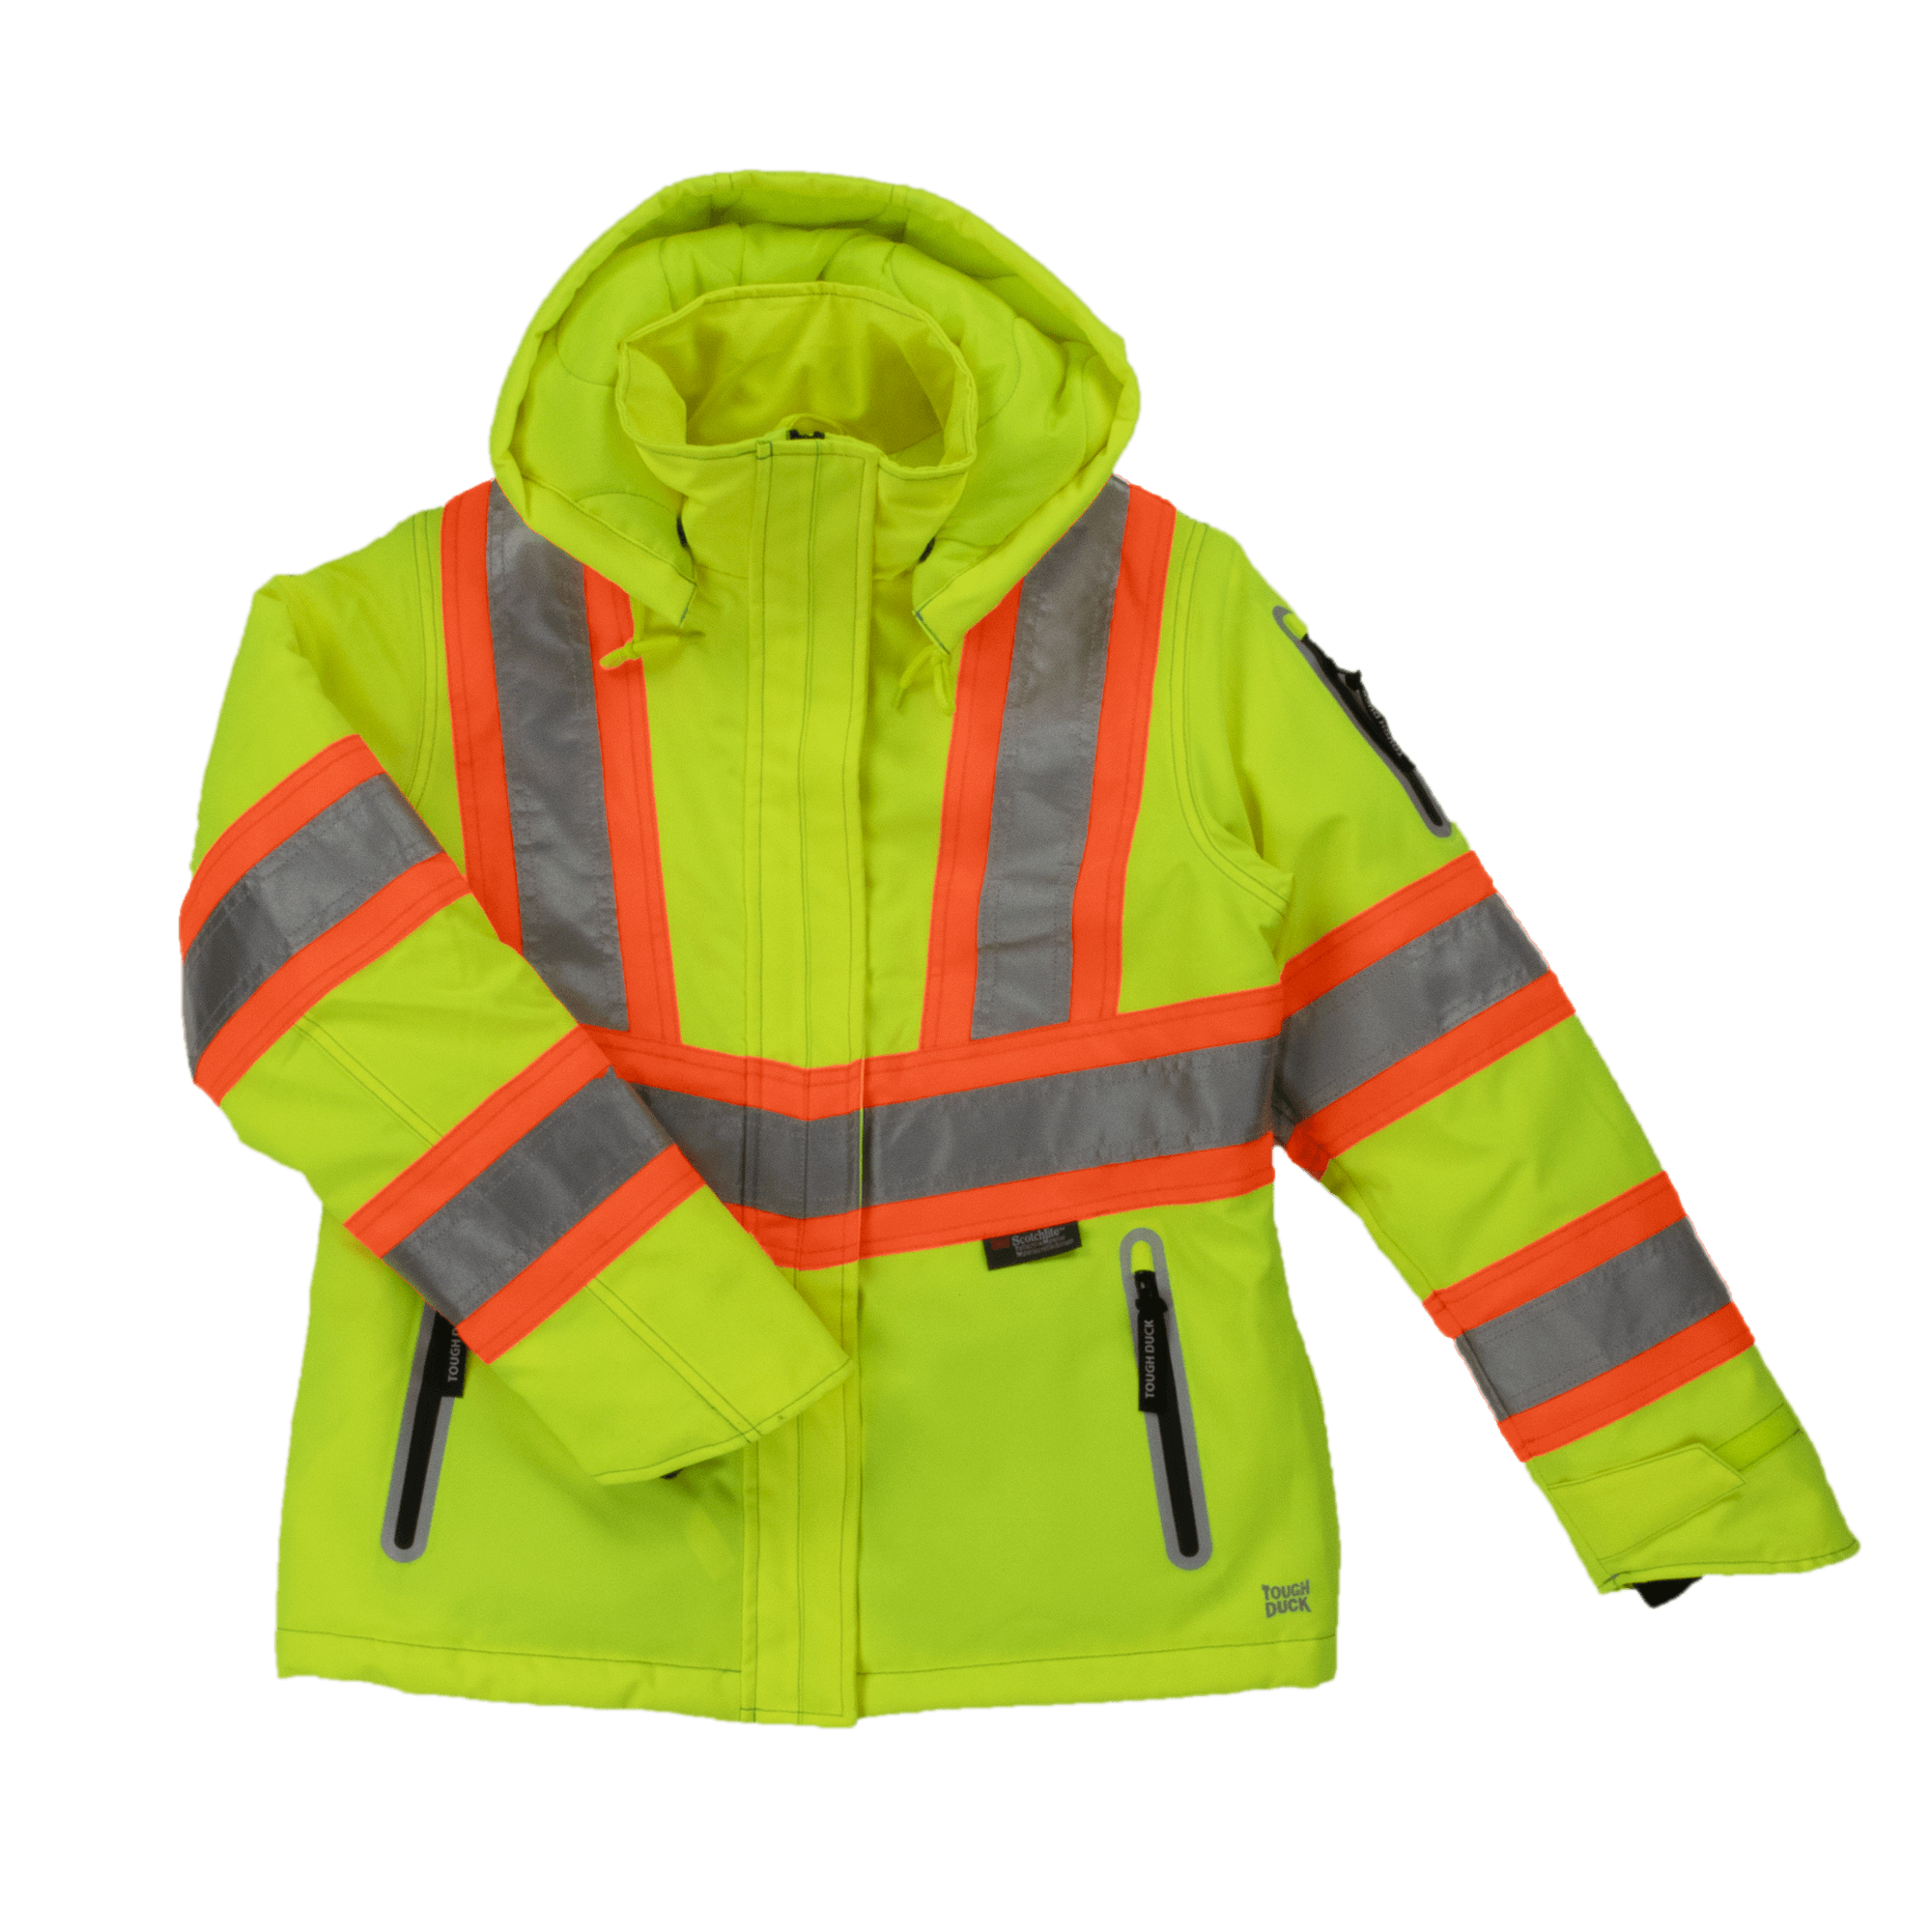 Tough Duck Women's Insulated Flex C3 Hi-Vis Waterproof Safety Jacket - Work World - Workwear, Work Boots, Safety Gear